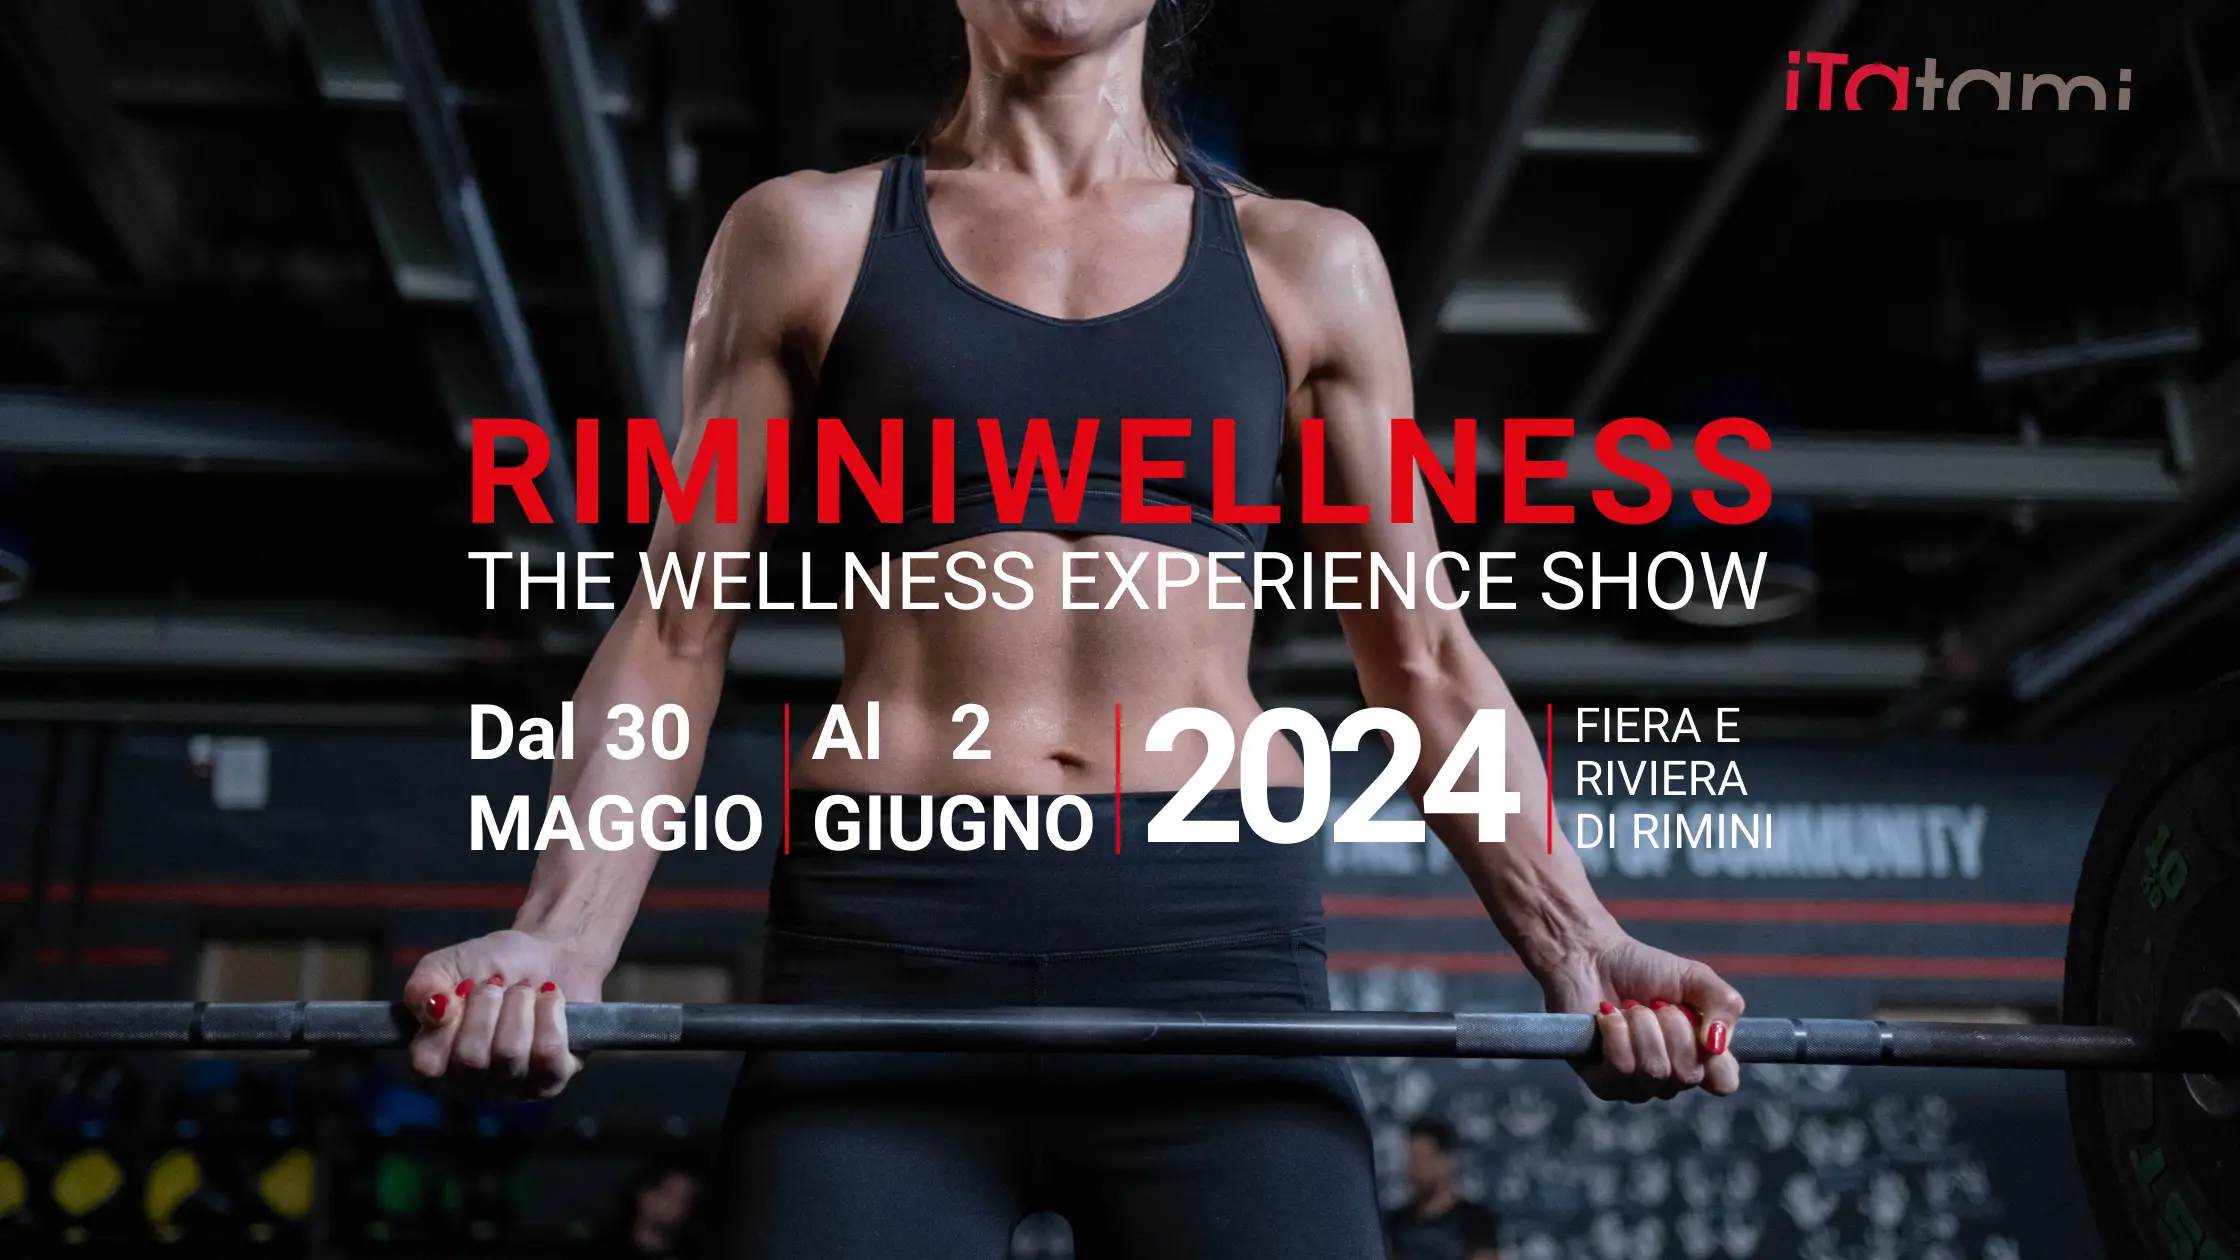 iTatami participation in the Rimini Wellness 2024 event